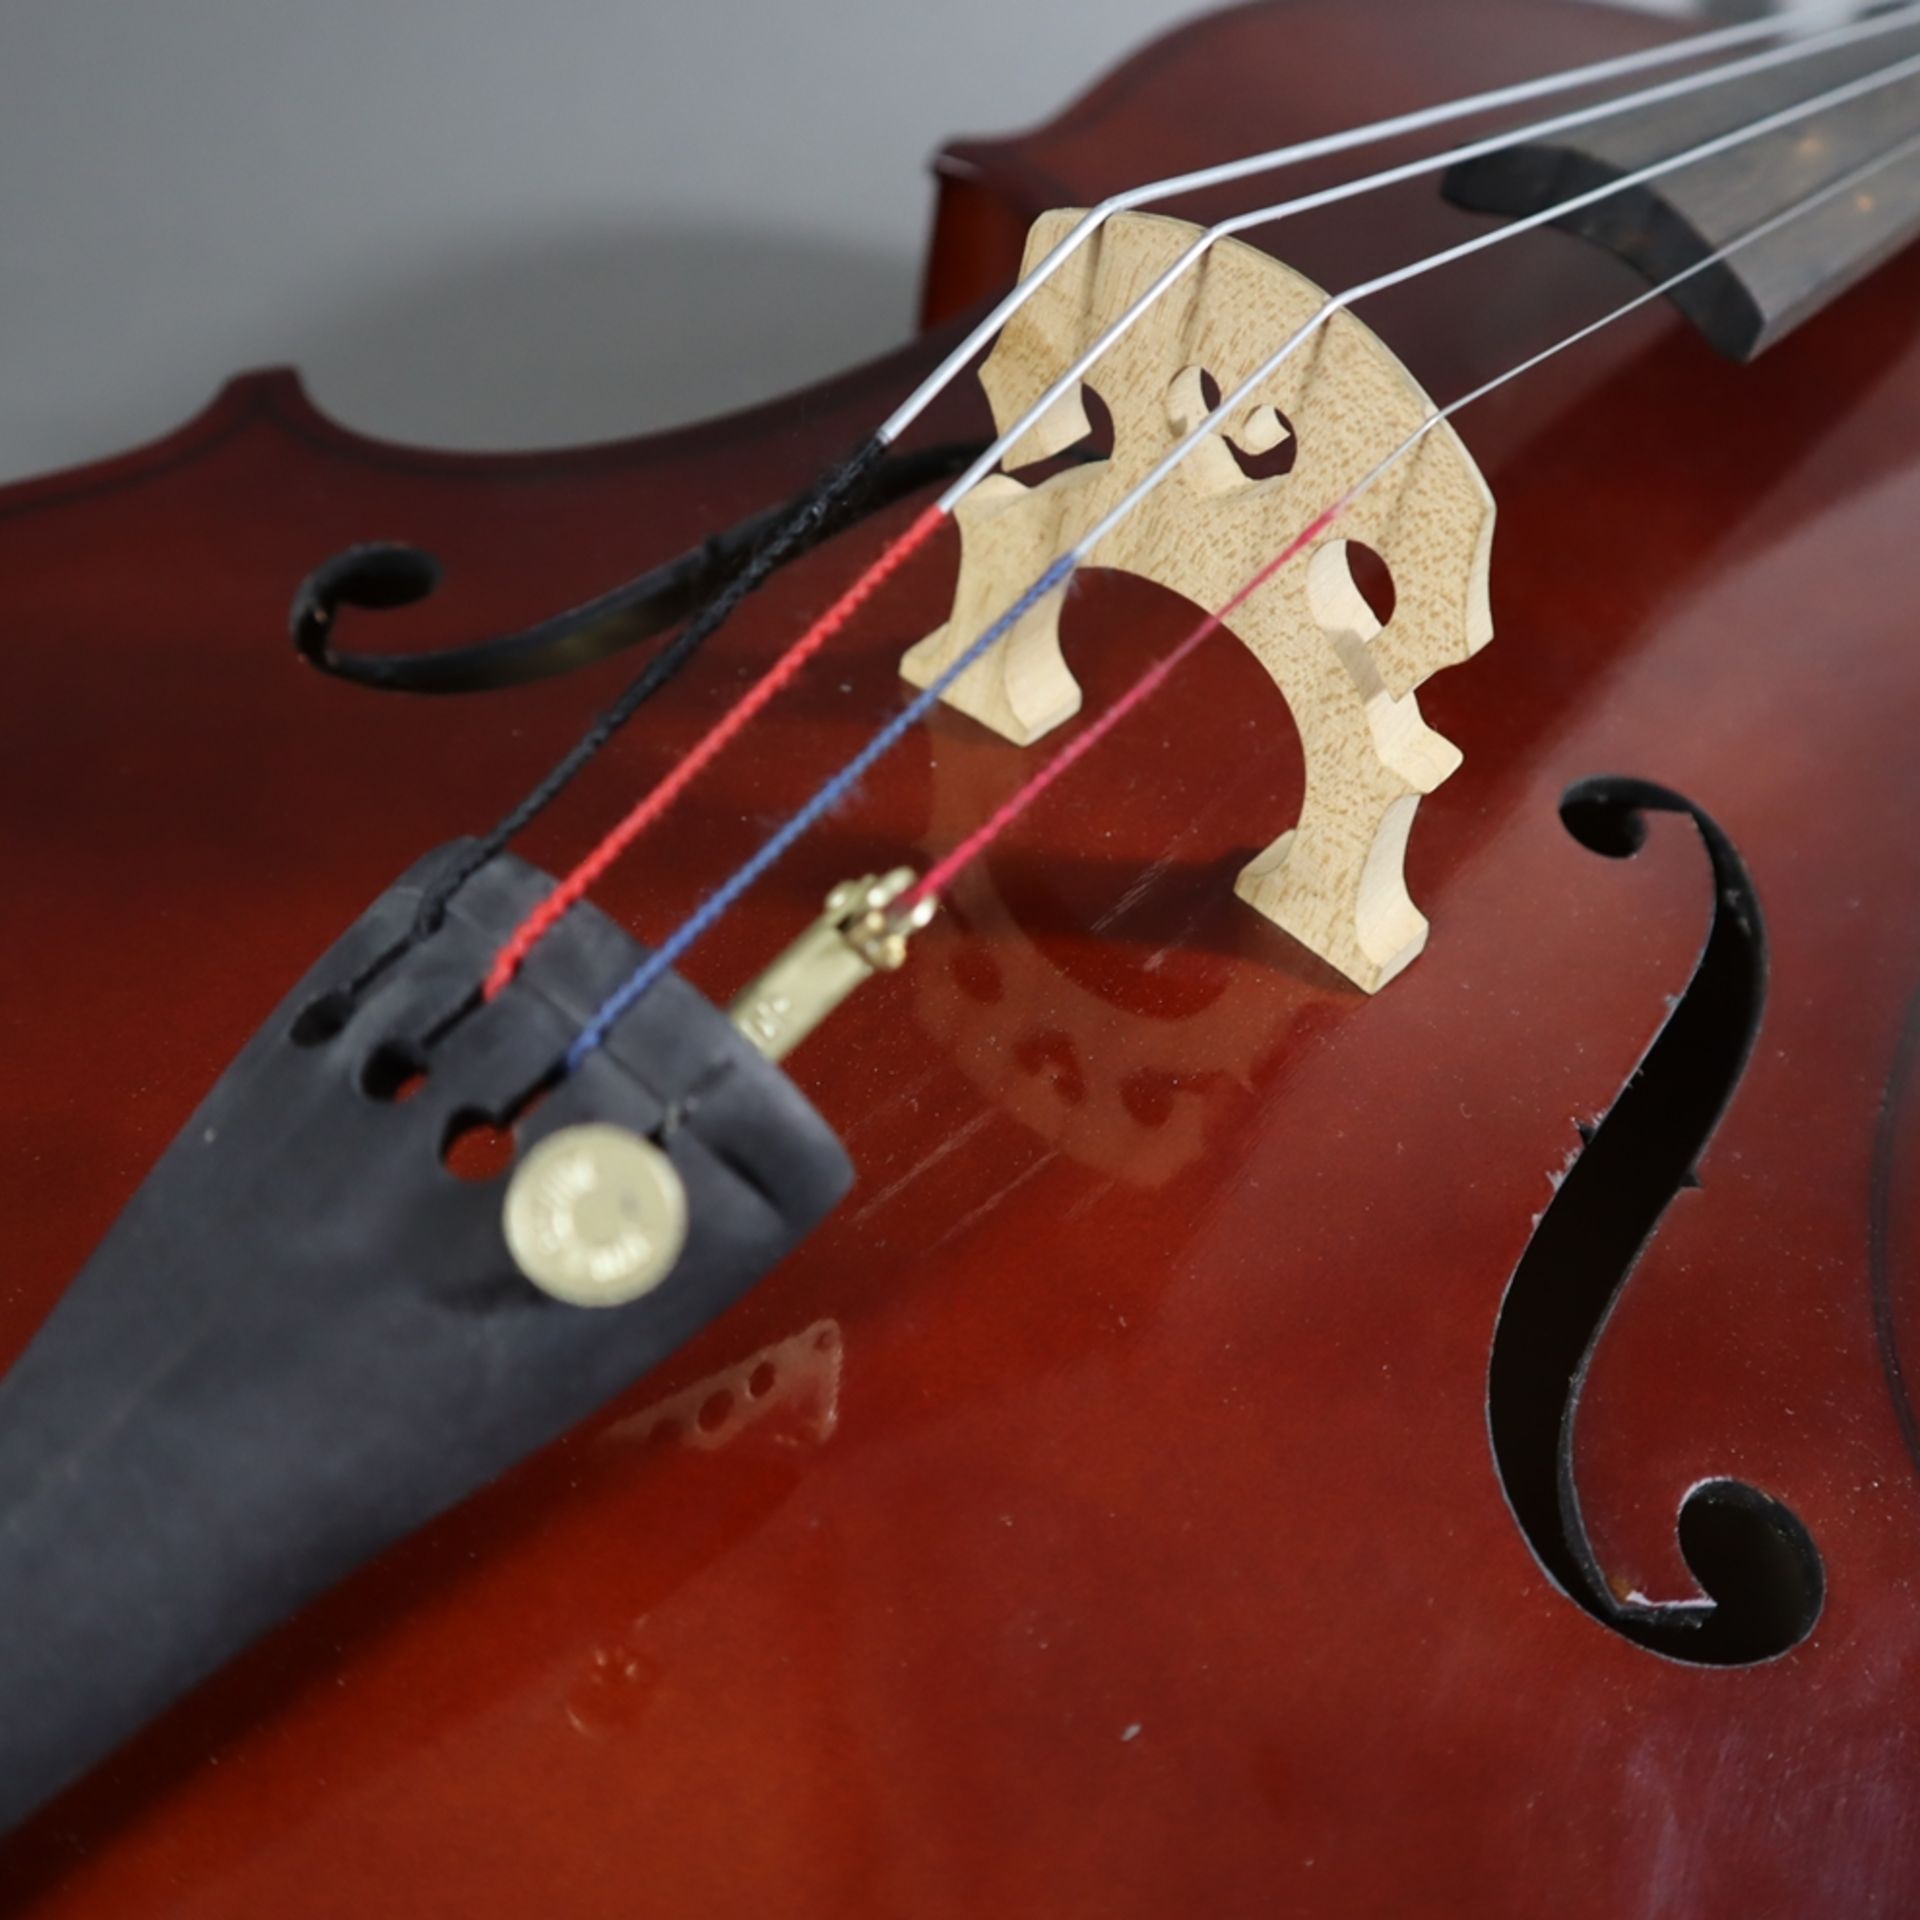 Cello - Kindergröße, innen mit Aufkleber "Made in Czechoslovakia", Holzkorpus mit zwei f-Löchern, S - Image 3 of 12